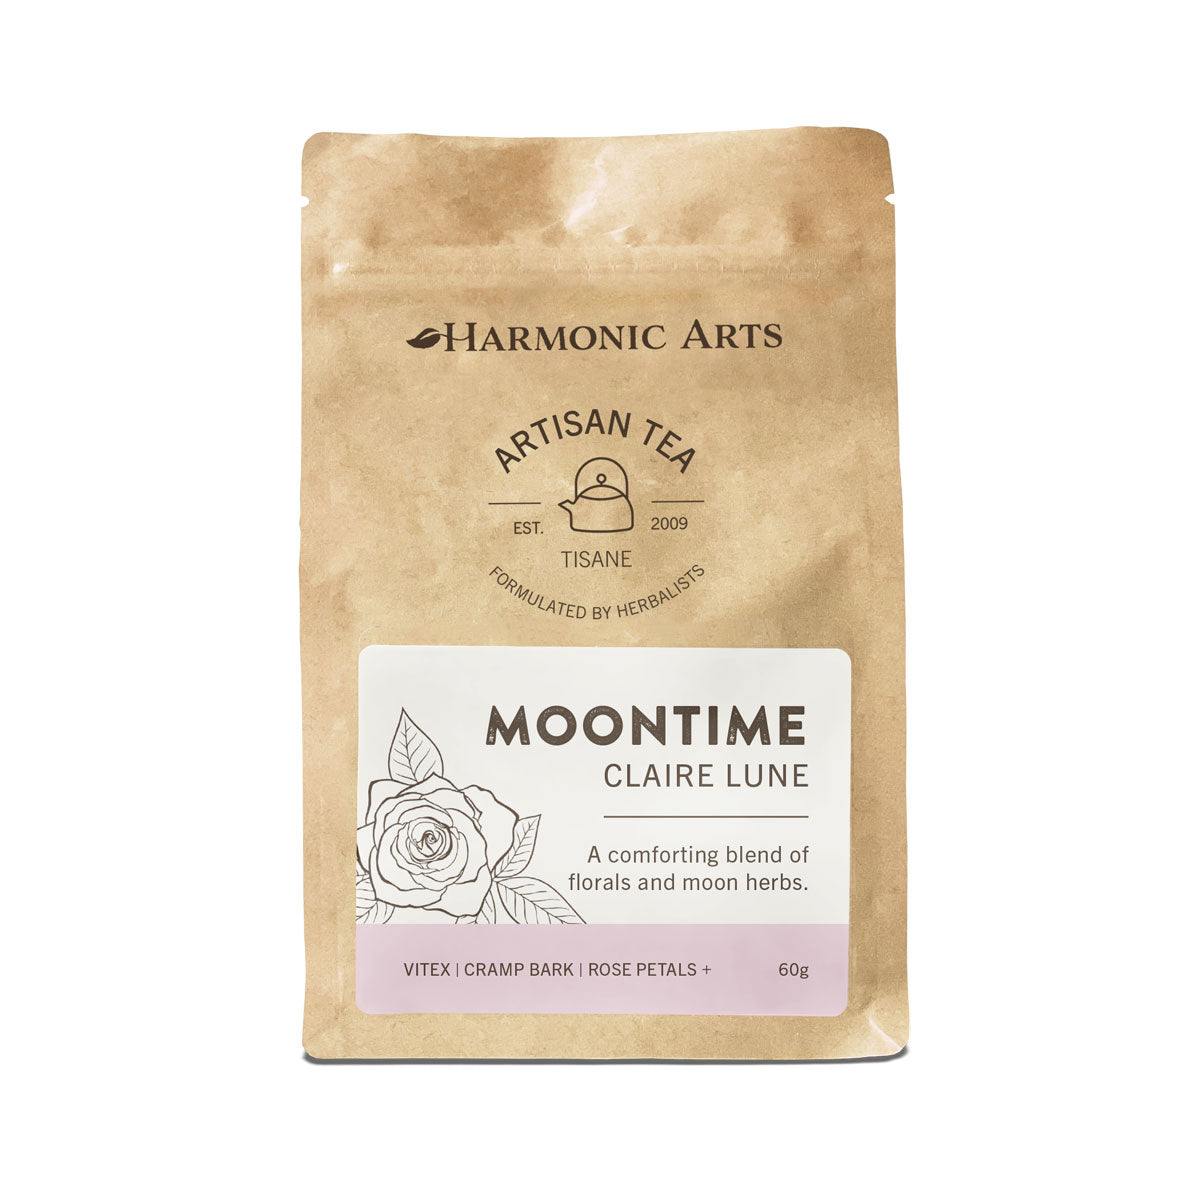 Harmonic Arts Artisan Tea - Moontime (60g) - Lifestyle Markets